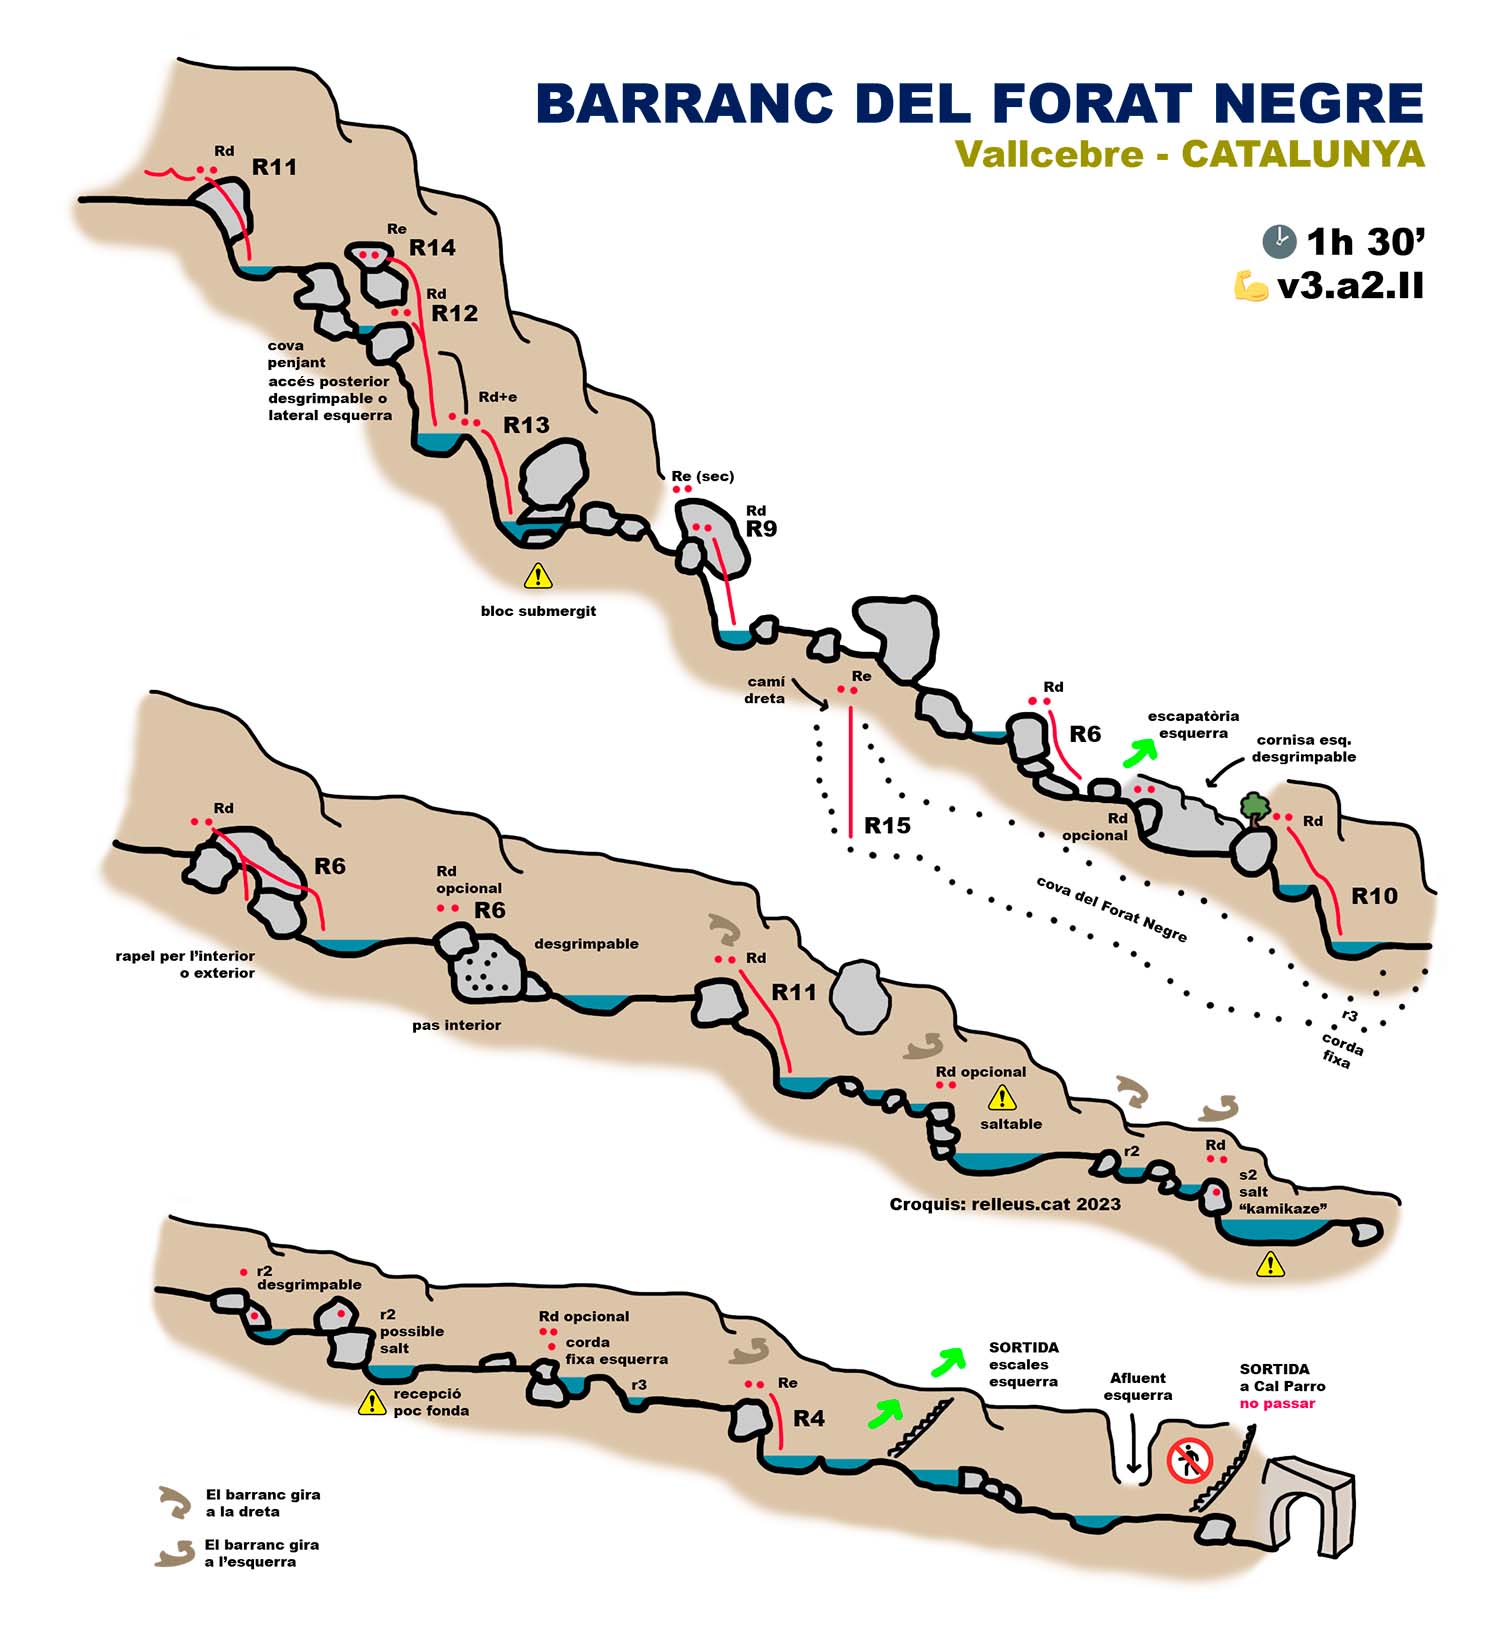 correcció i actualizació de la topografia, croquis o ressenya del Barranc del Forat Negre de Vallcebre, el Berguedà, Barcelona, Catalunya